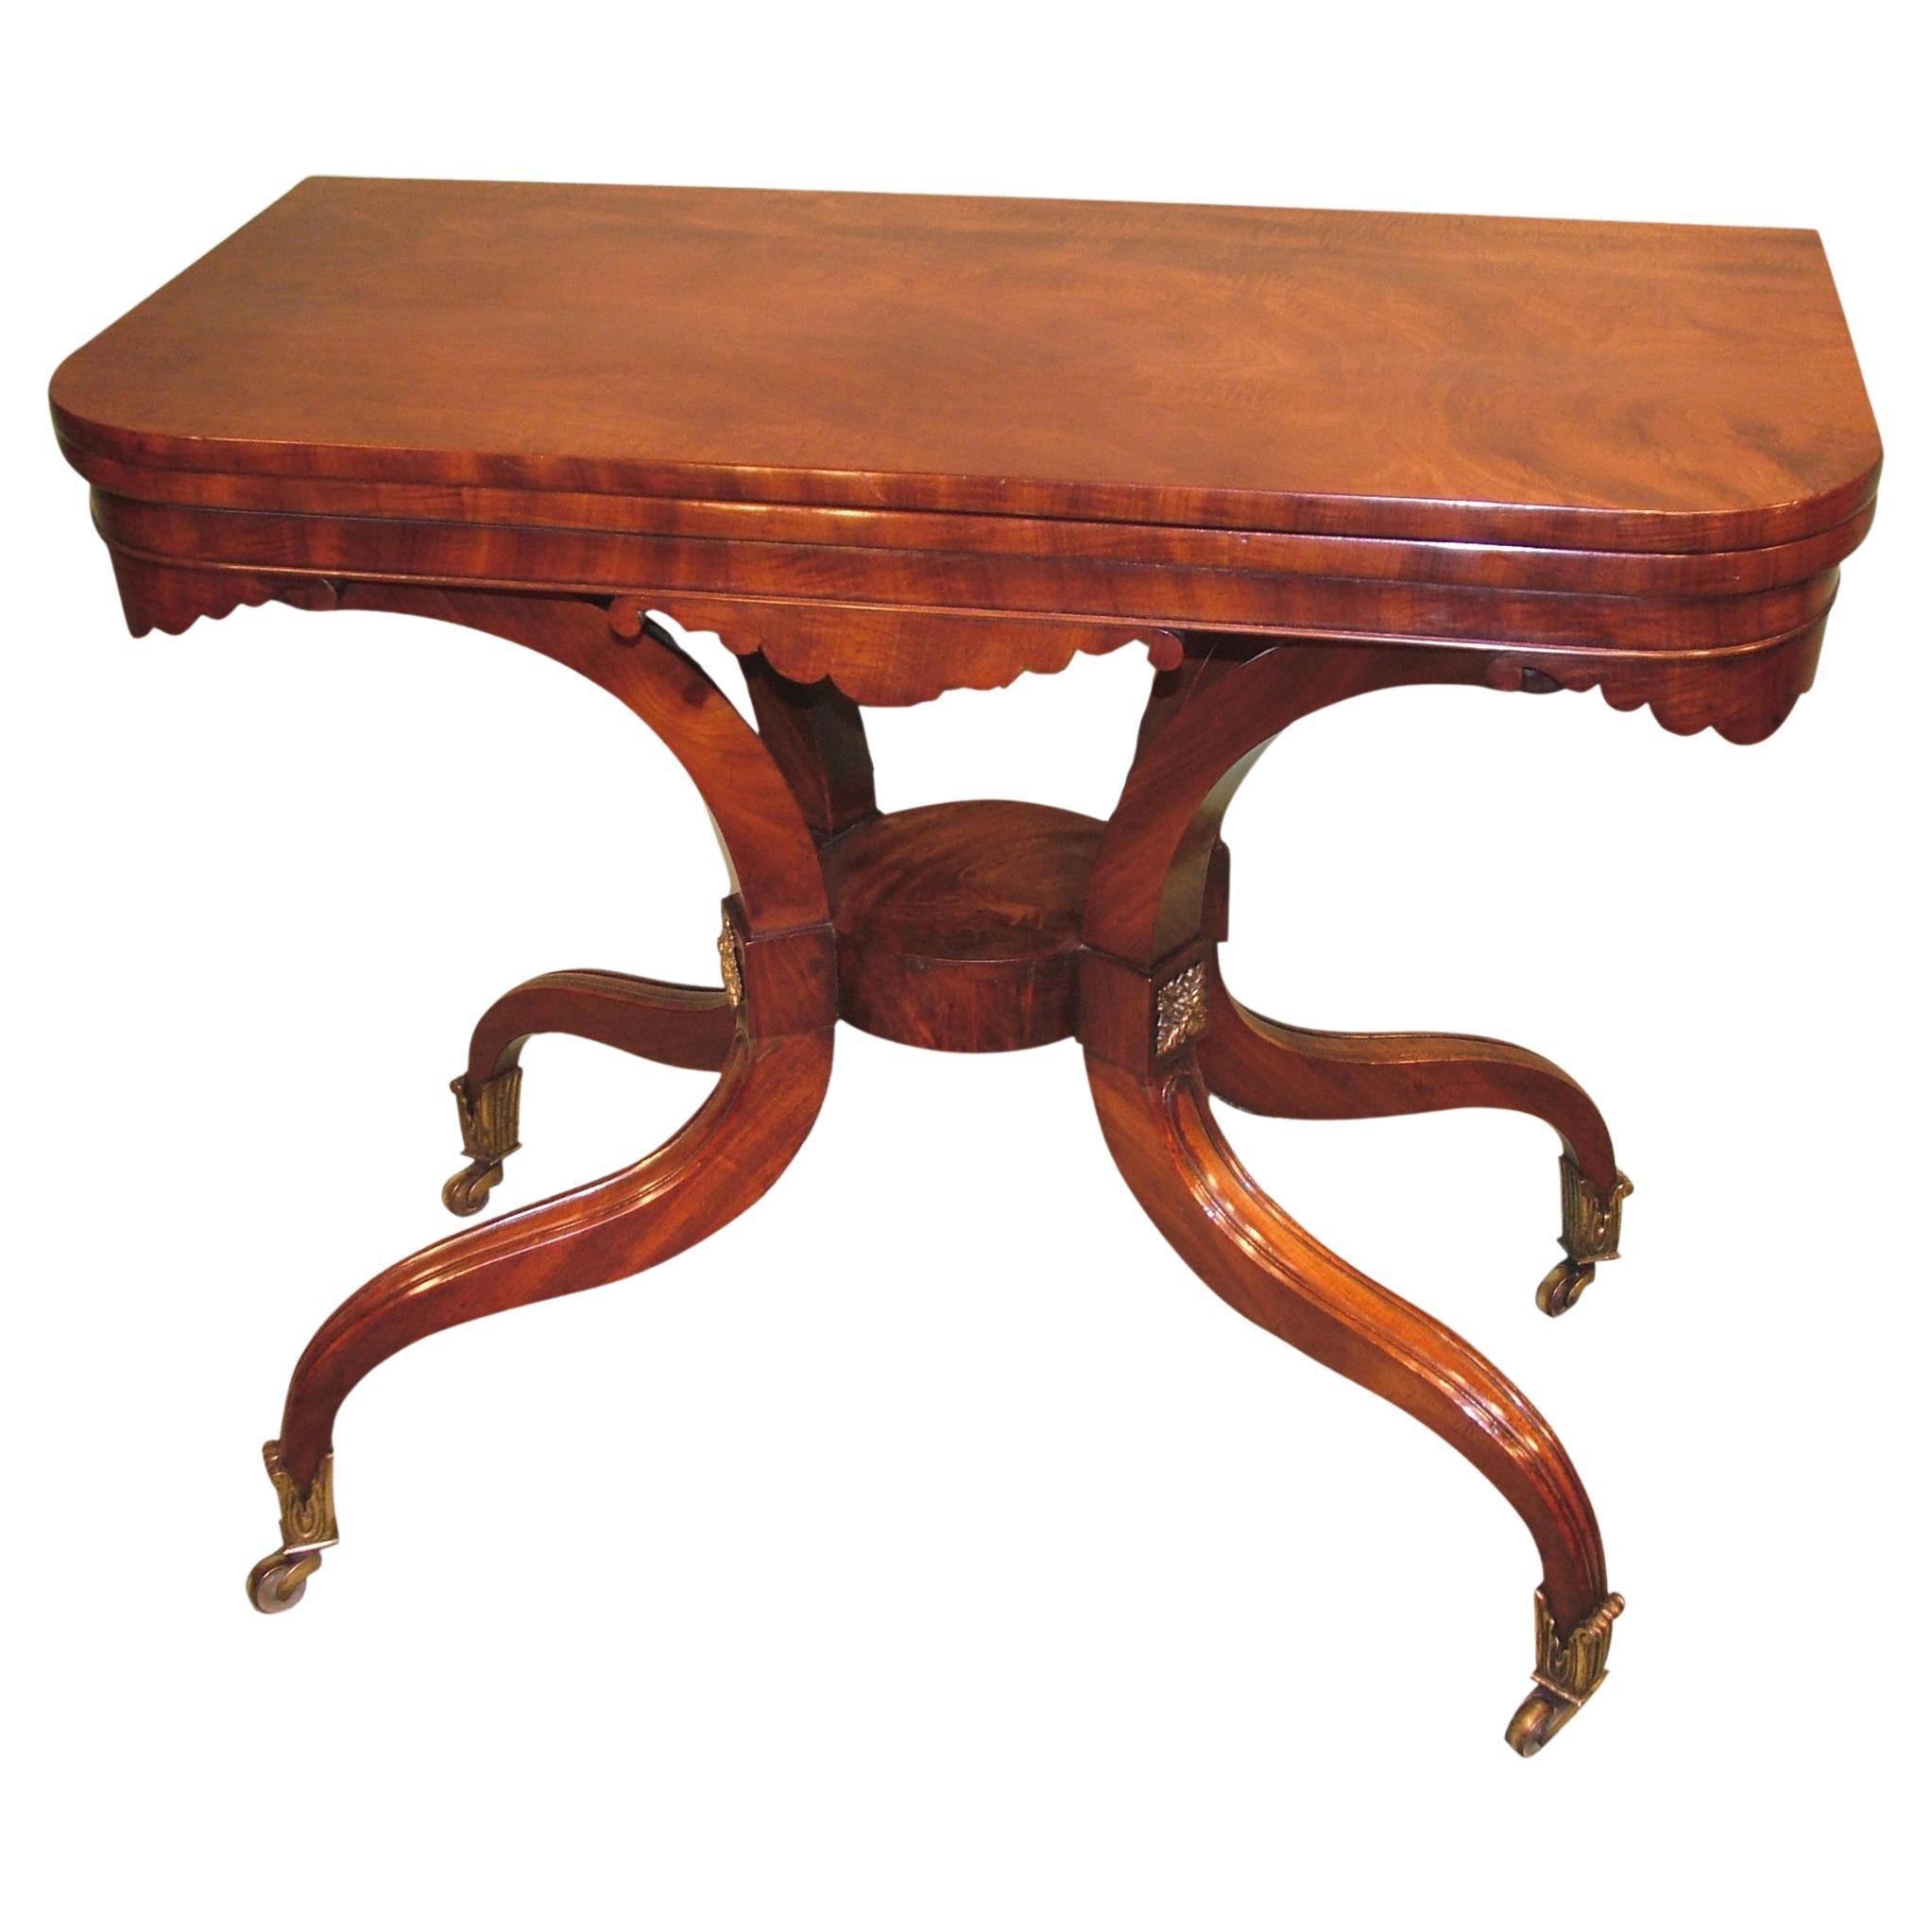 Table à thé de style Régence en acajou du début du XIXe siècle